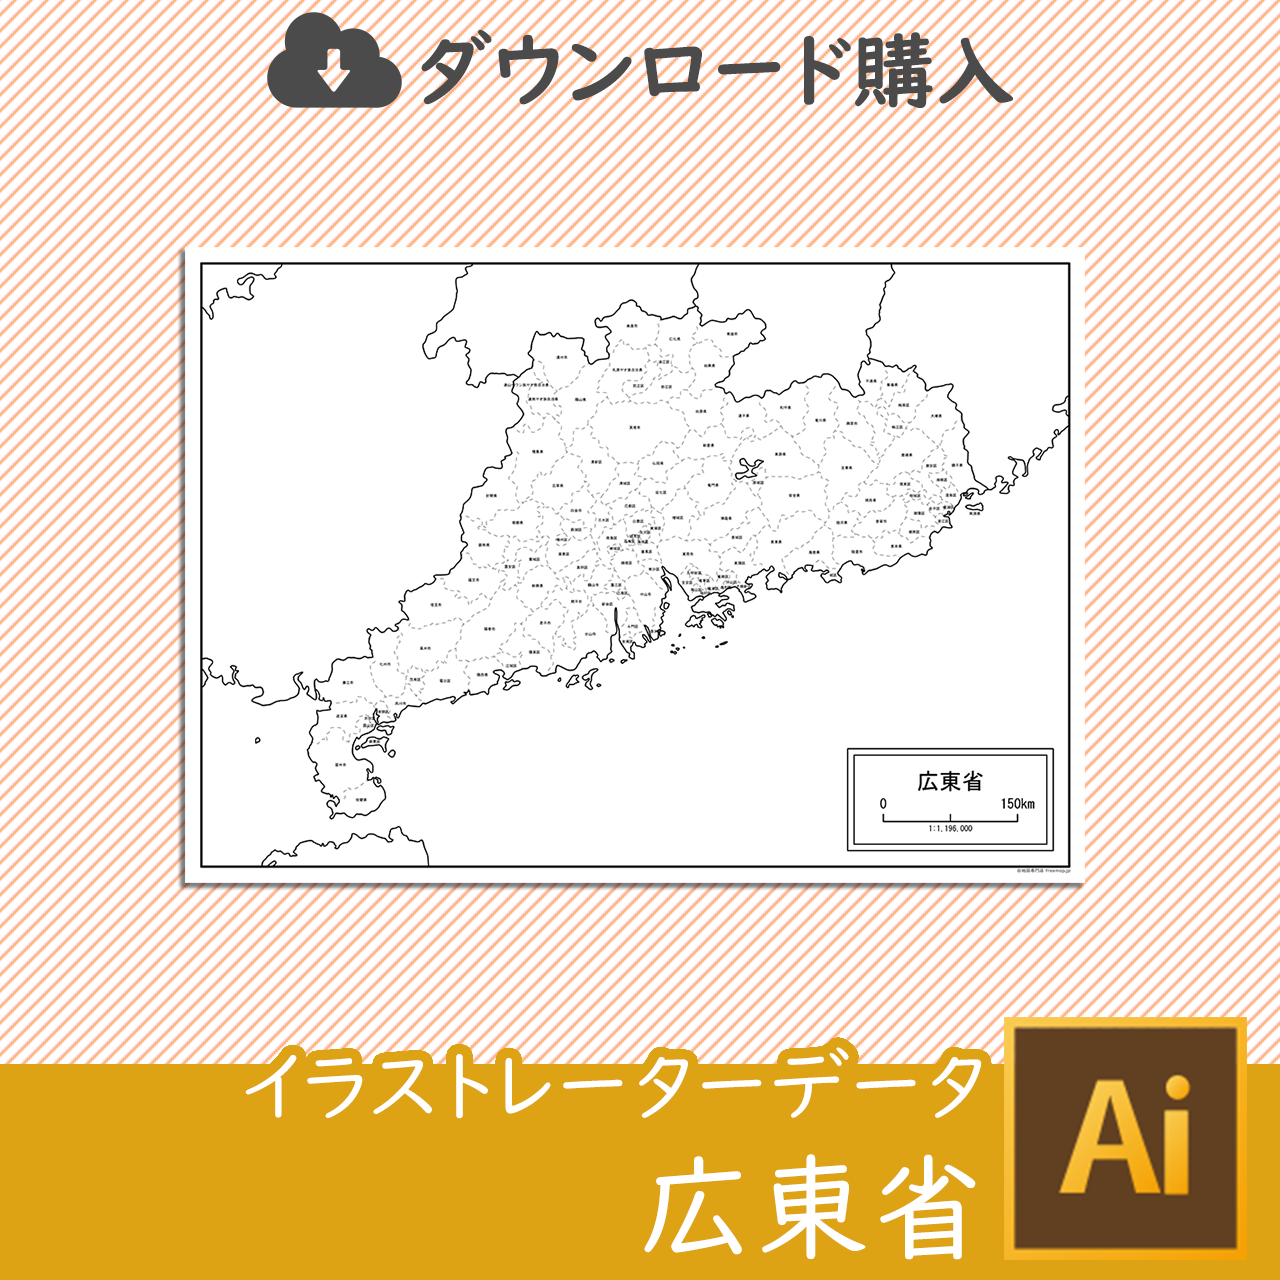 広東省の白地図データのサムネイル画像